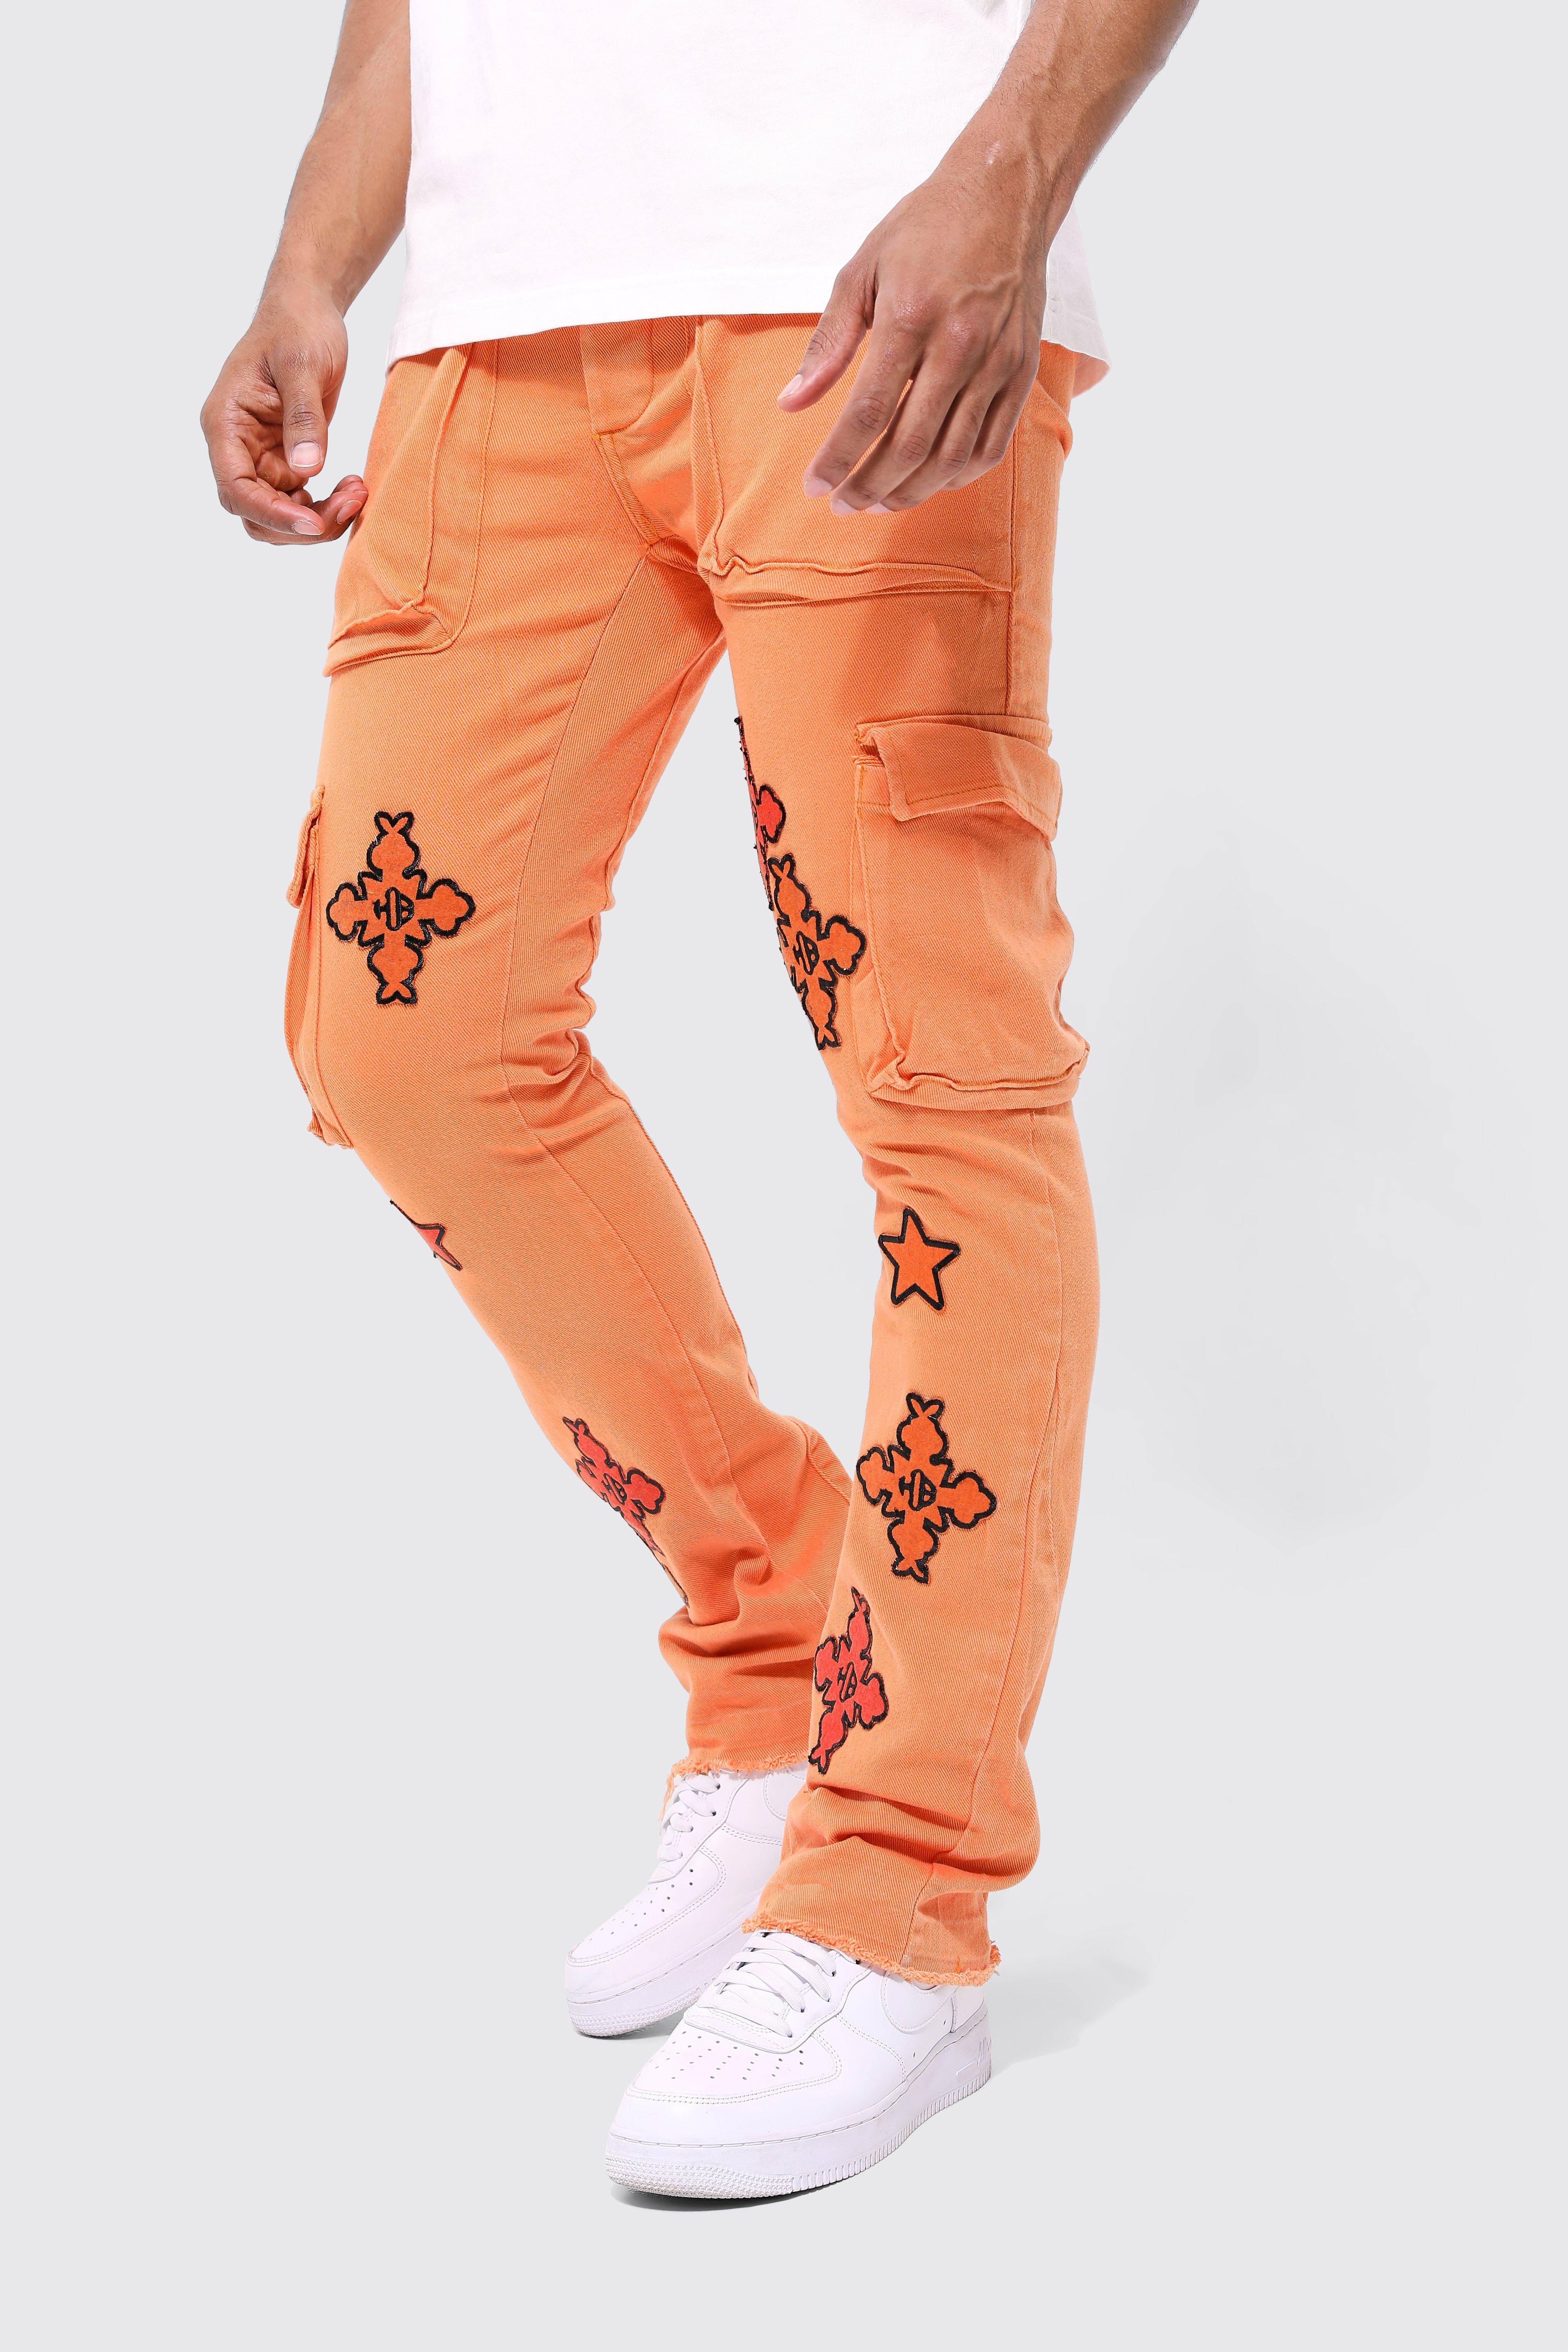 pantalon cargo flare homme - orange - 32r, orange